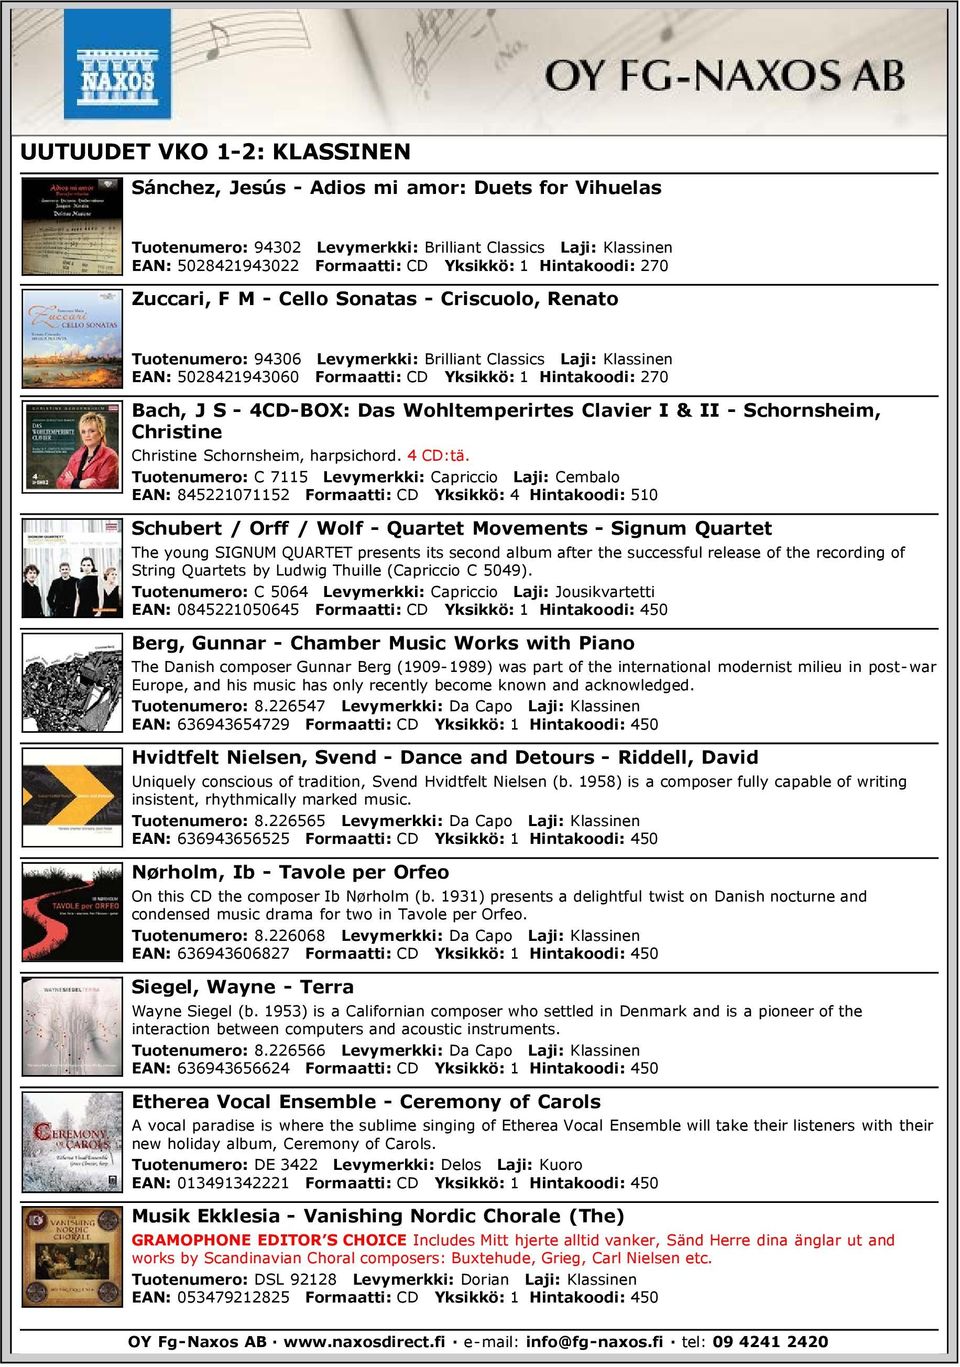 S - 4CD-BOX: Das Wohltemperirtes Clavier I & II - Schornsheim, Christine Christine Schornsheim, harpsichord. 4 CD:tä.